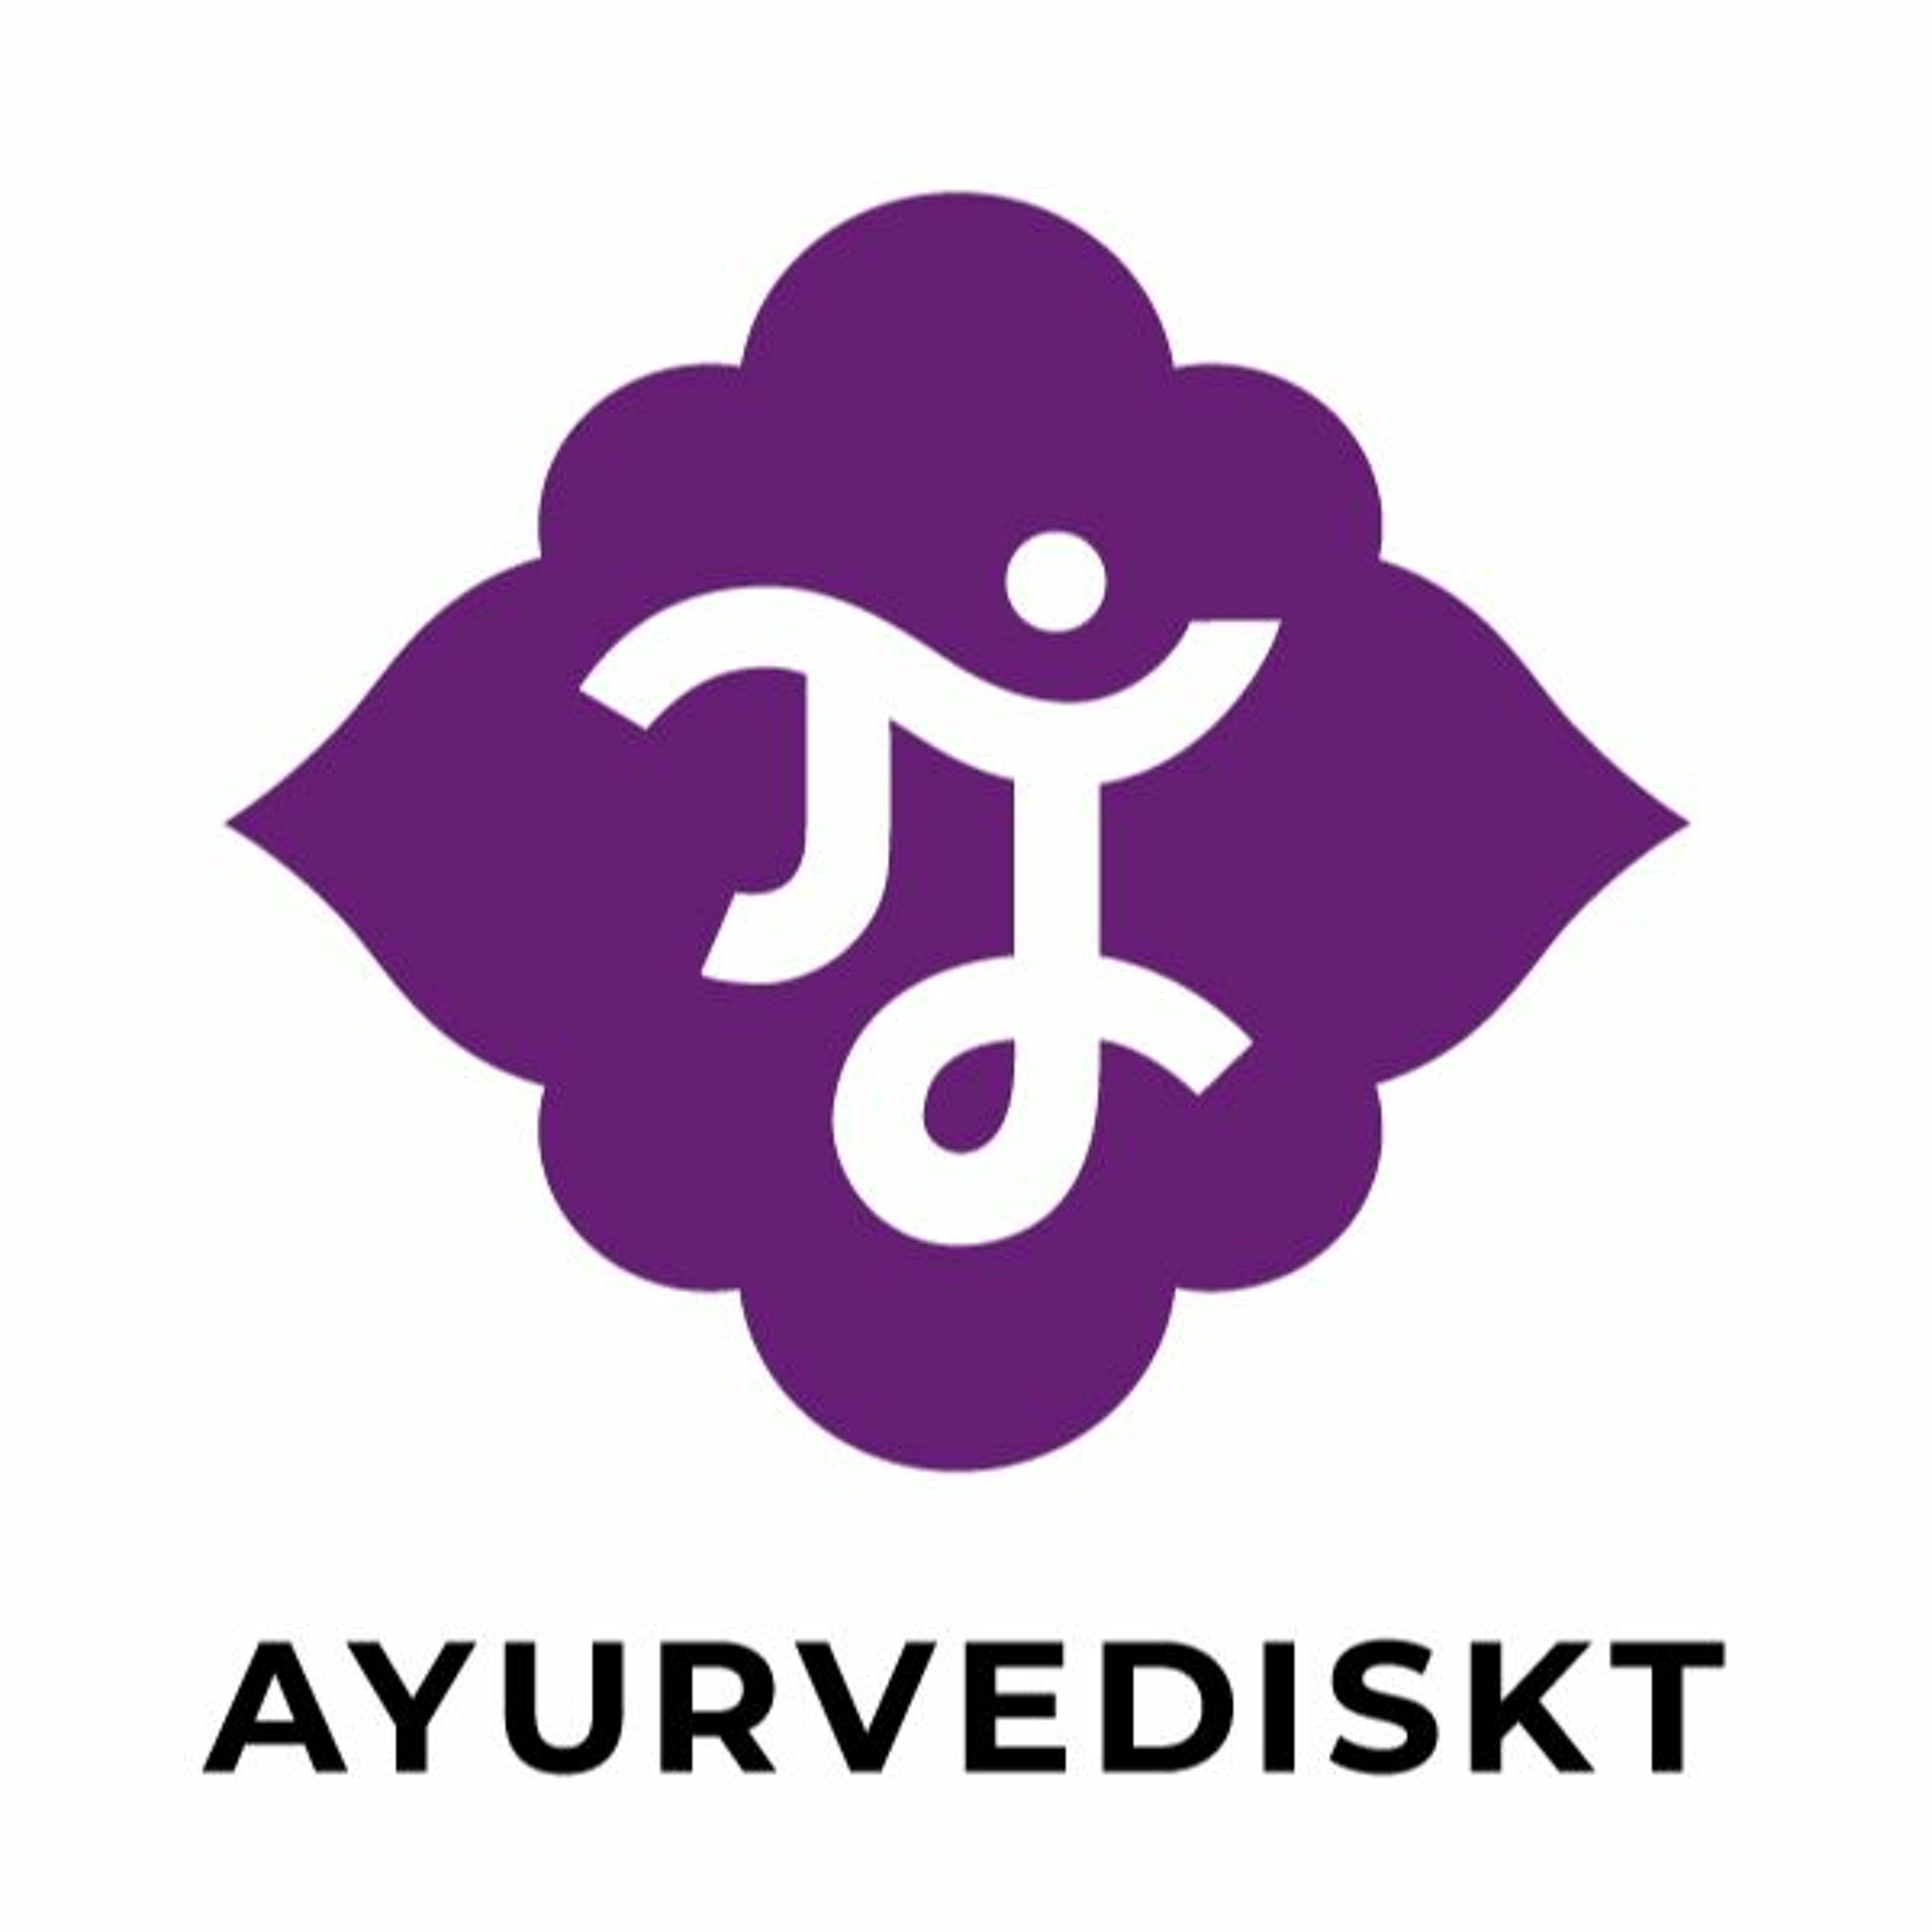 Podden Ayurvediskt avsnitt 12: När ayurveda möter vetenskapen